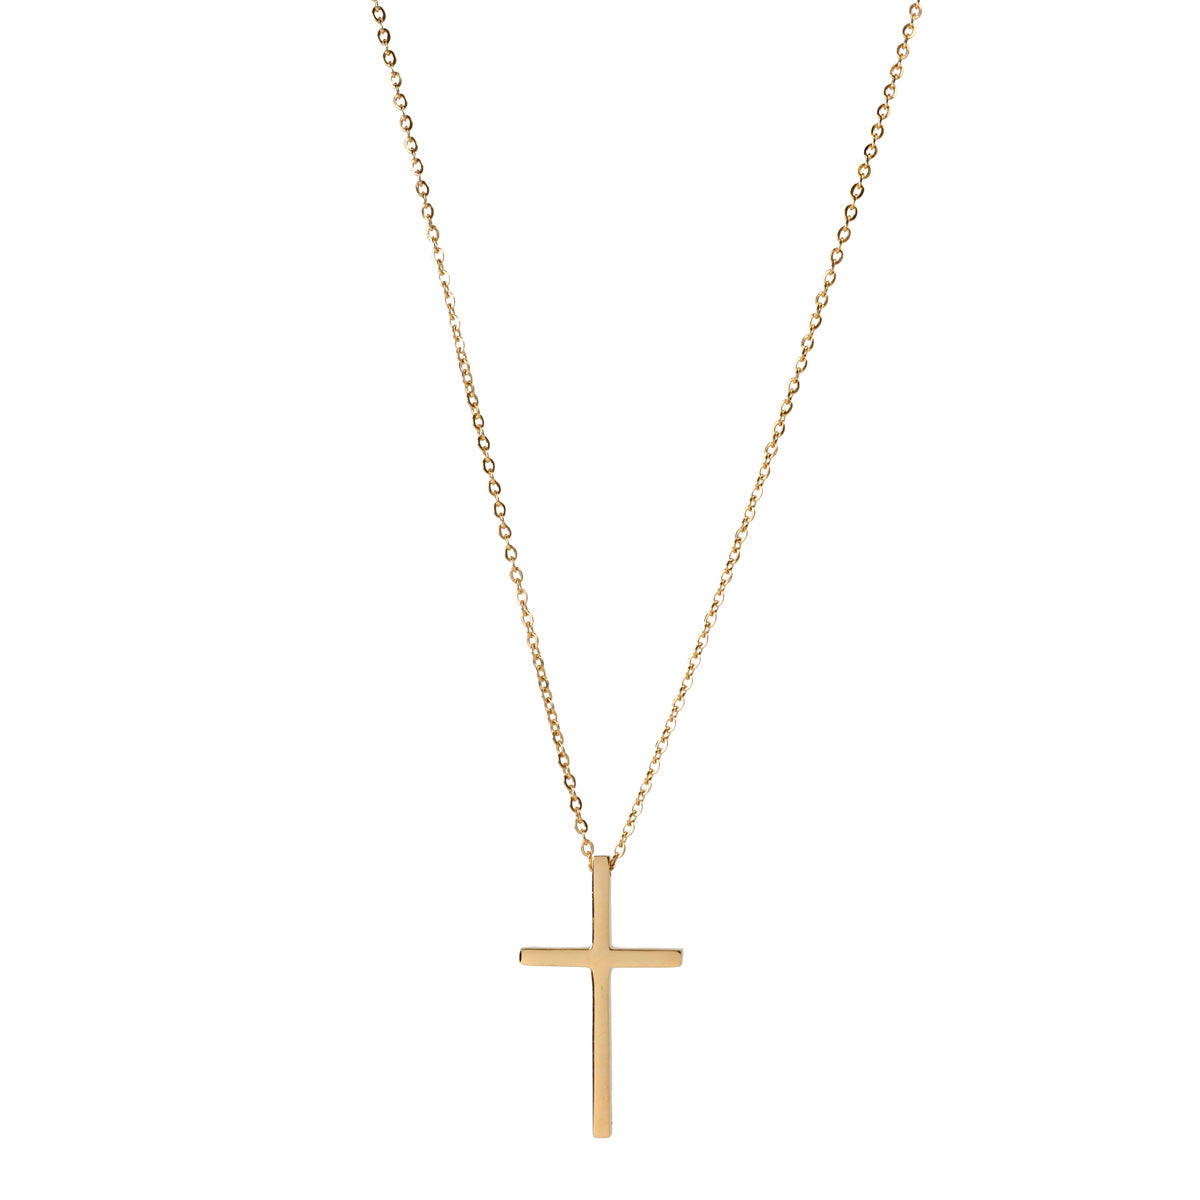 Steel cross necklace 50cm (steel 316L)